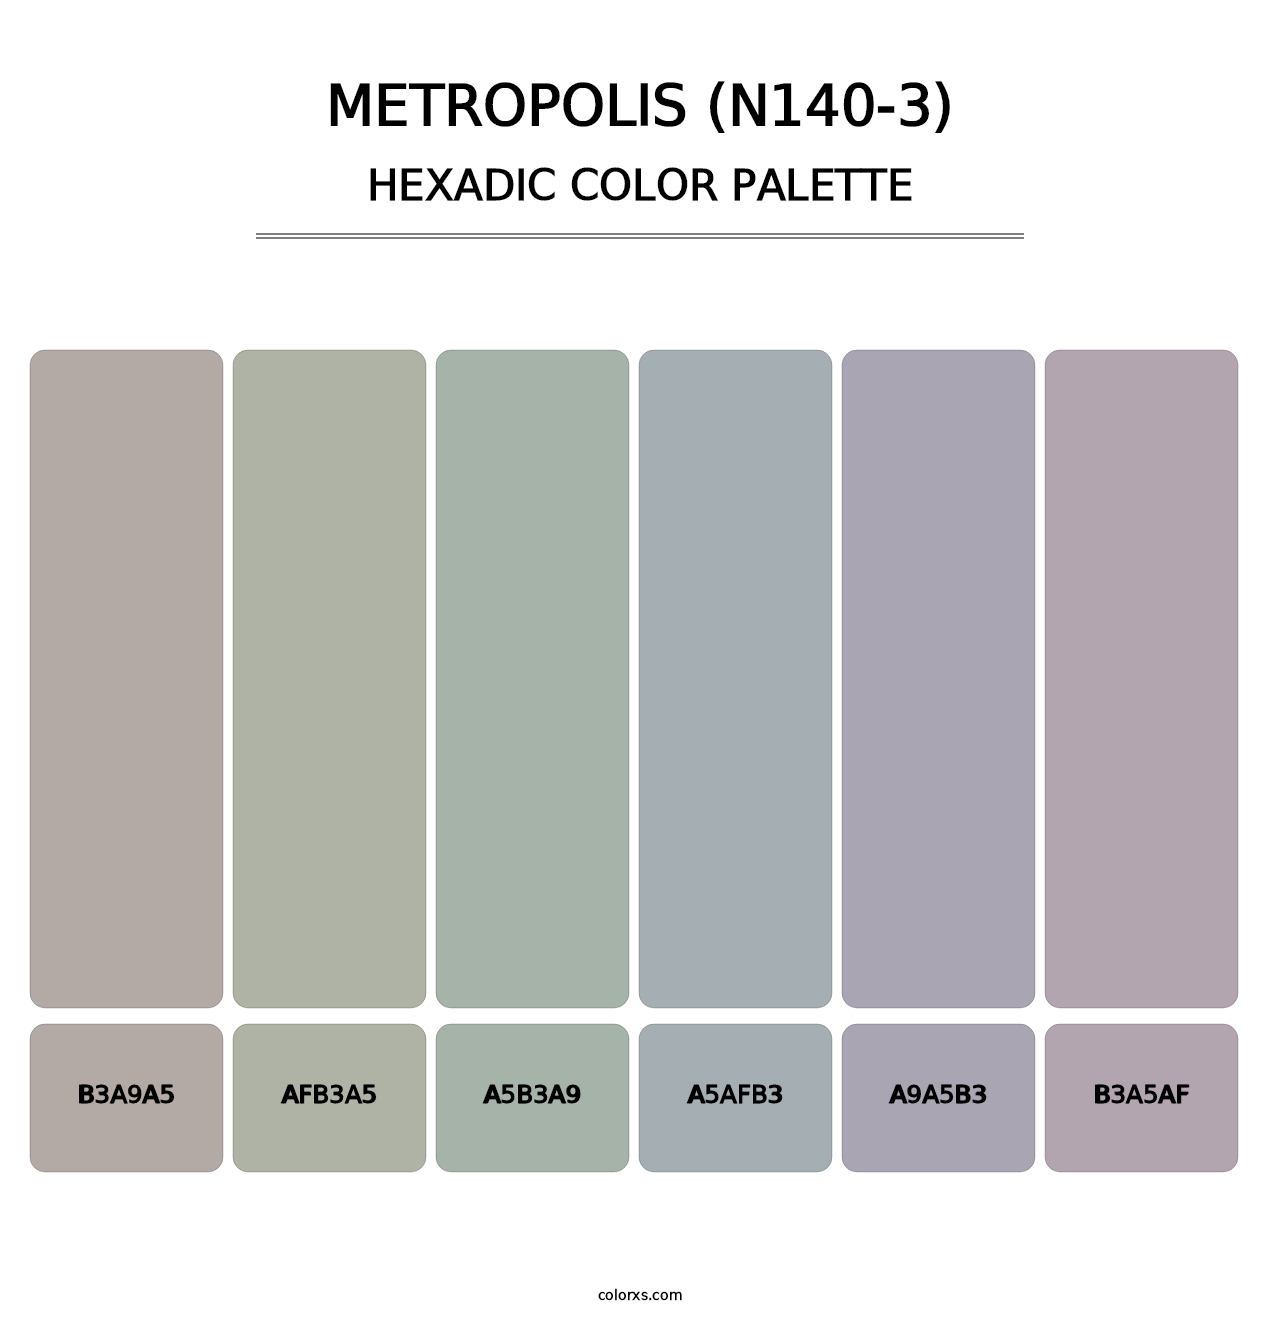 Metropolis (N140-3) - Hexadic Color Palette